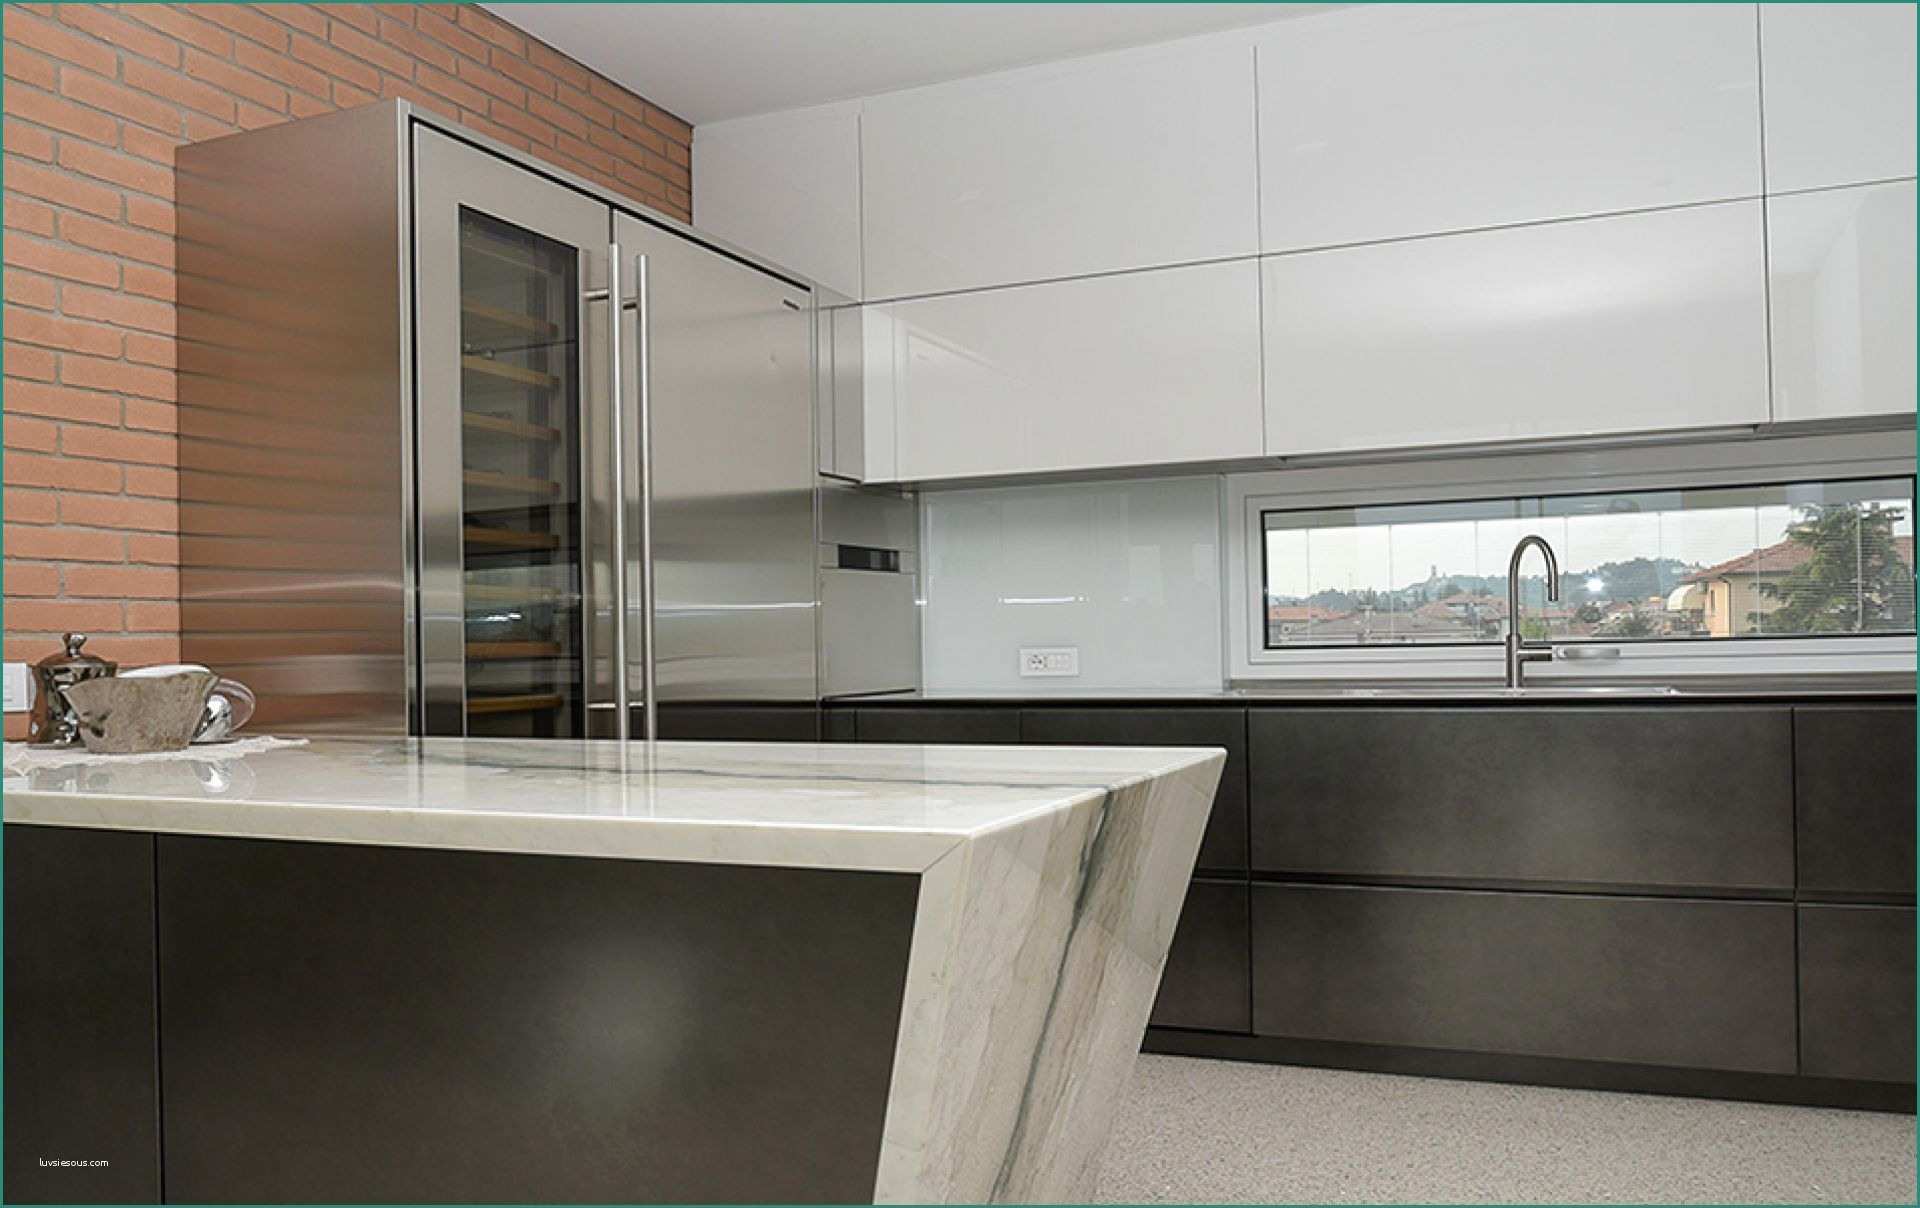 Offerta Cucina Completa E Immagini Di Cucine Moderne Excellent soggiorno Open Space soggiorno